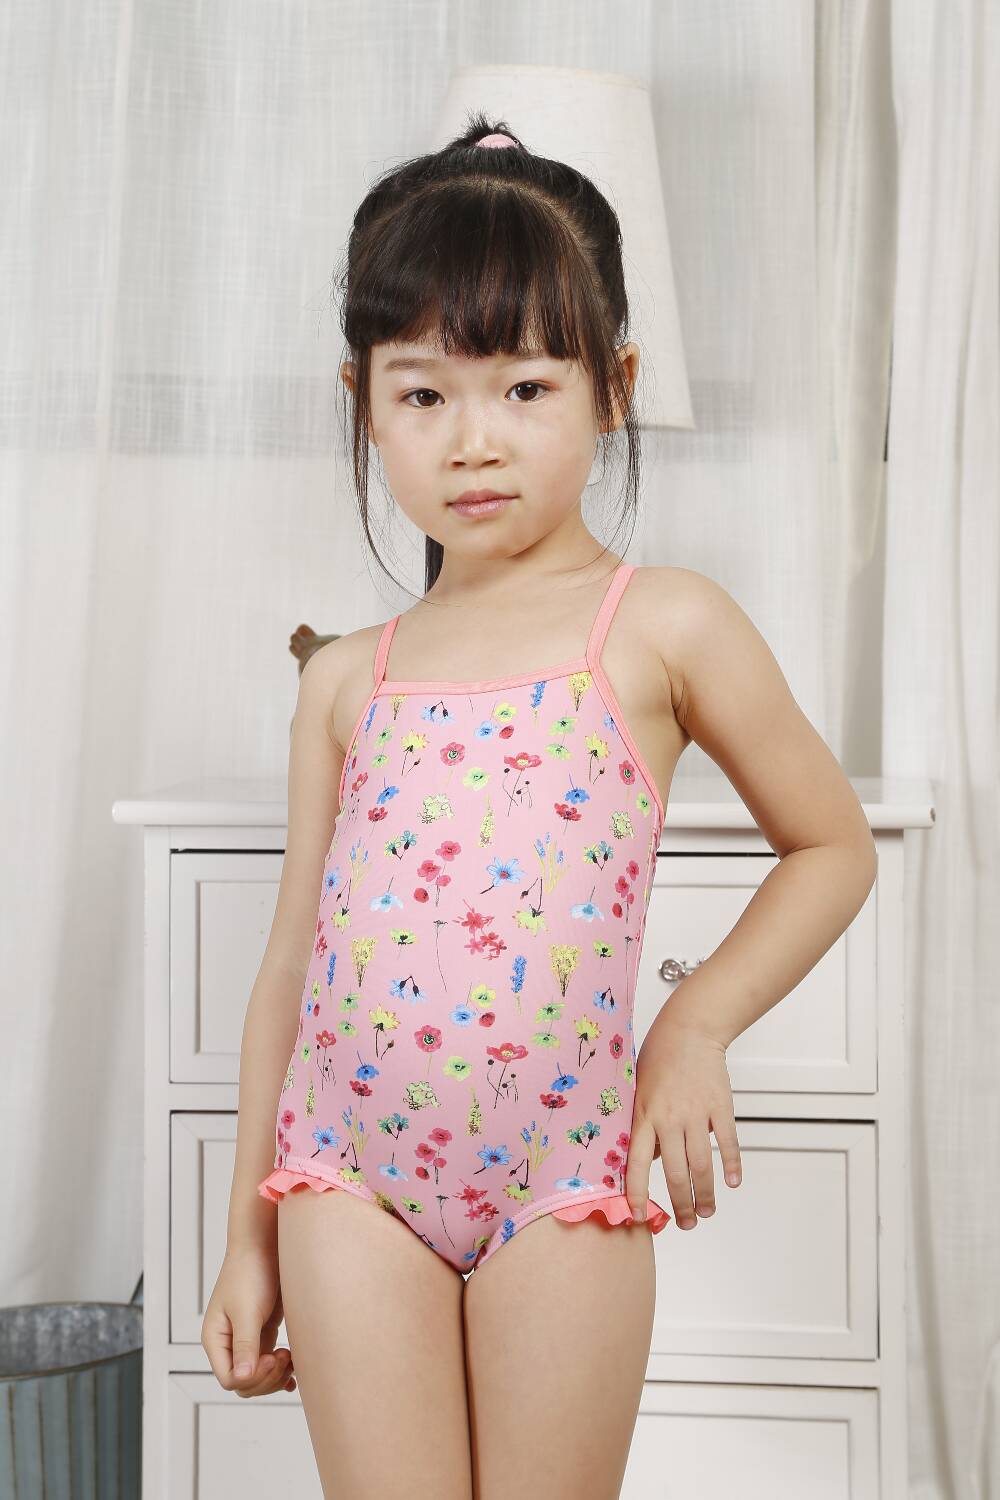 Kids swimming suit and girls swimwear